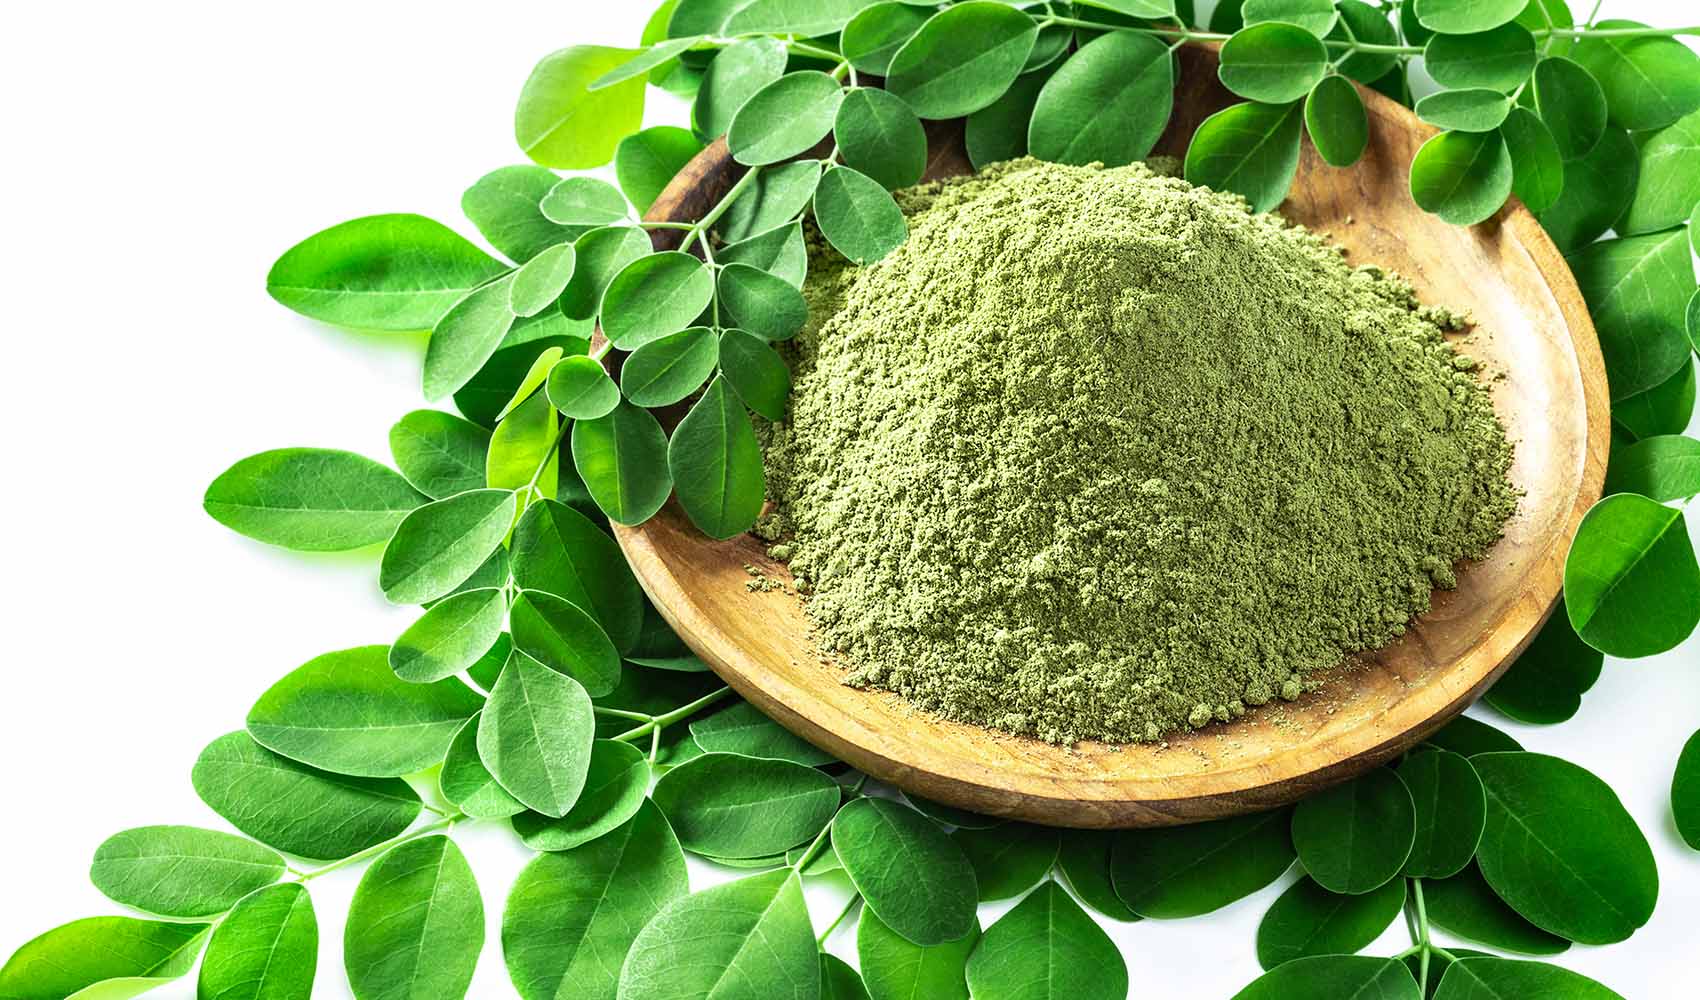 moringa-powder-benefits-nutrition-and-uses-3